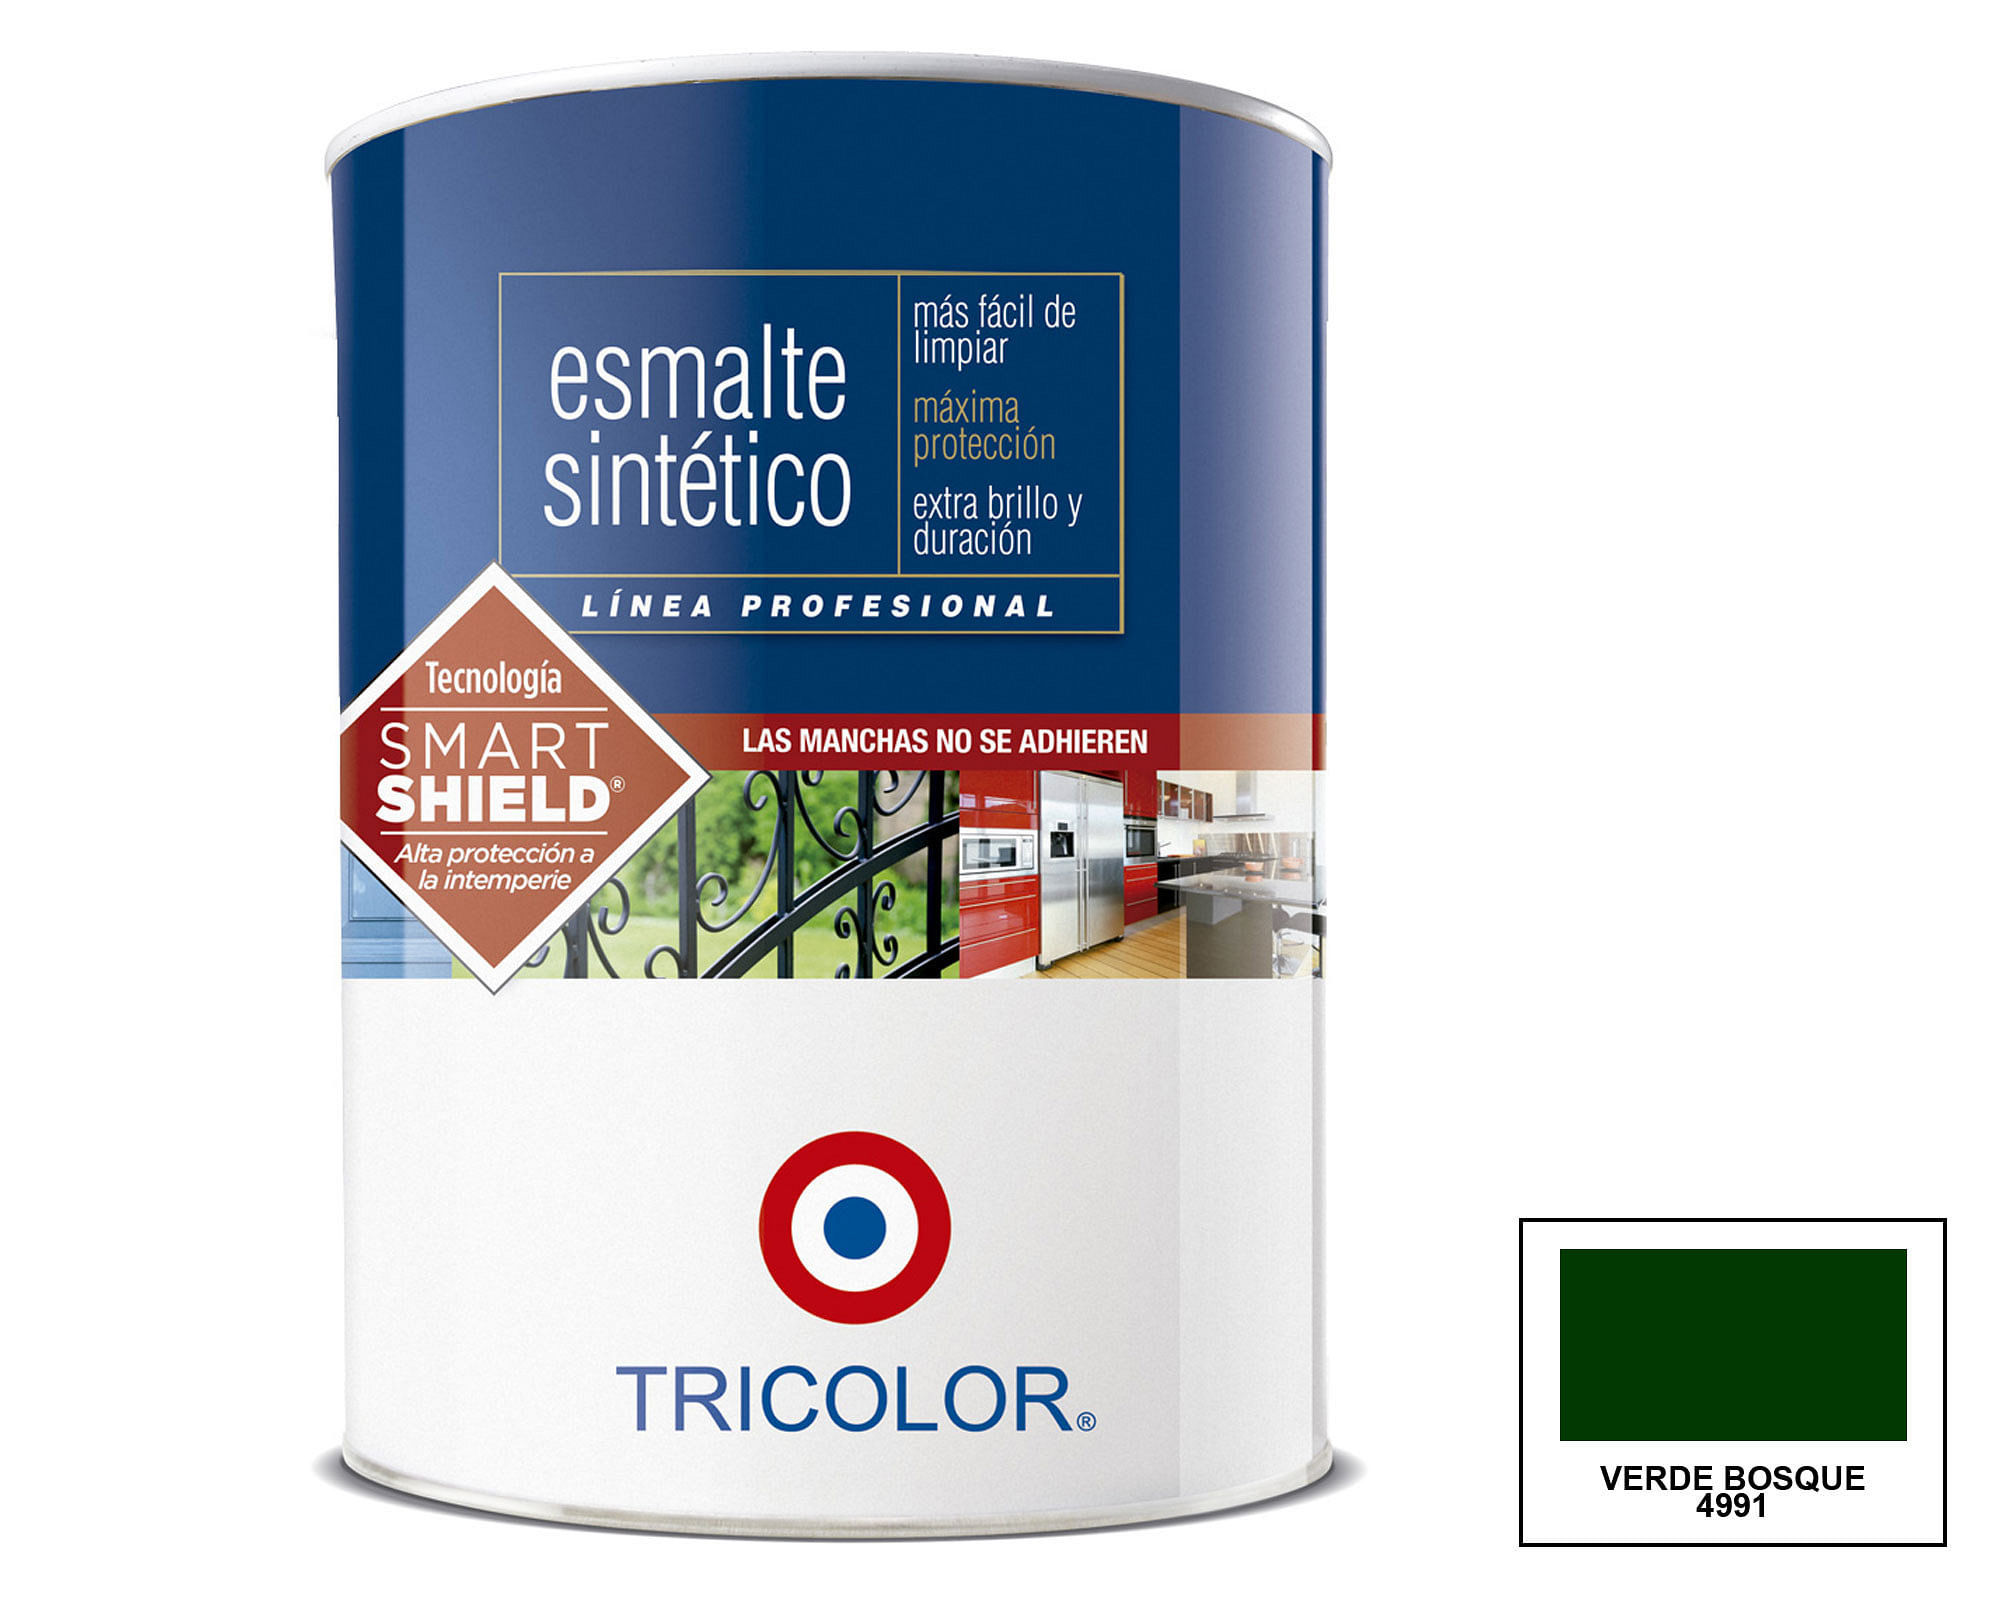 Esmalte sintético 400 ml Profesional verde bosque brillante Tricolor